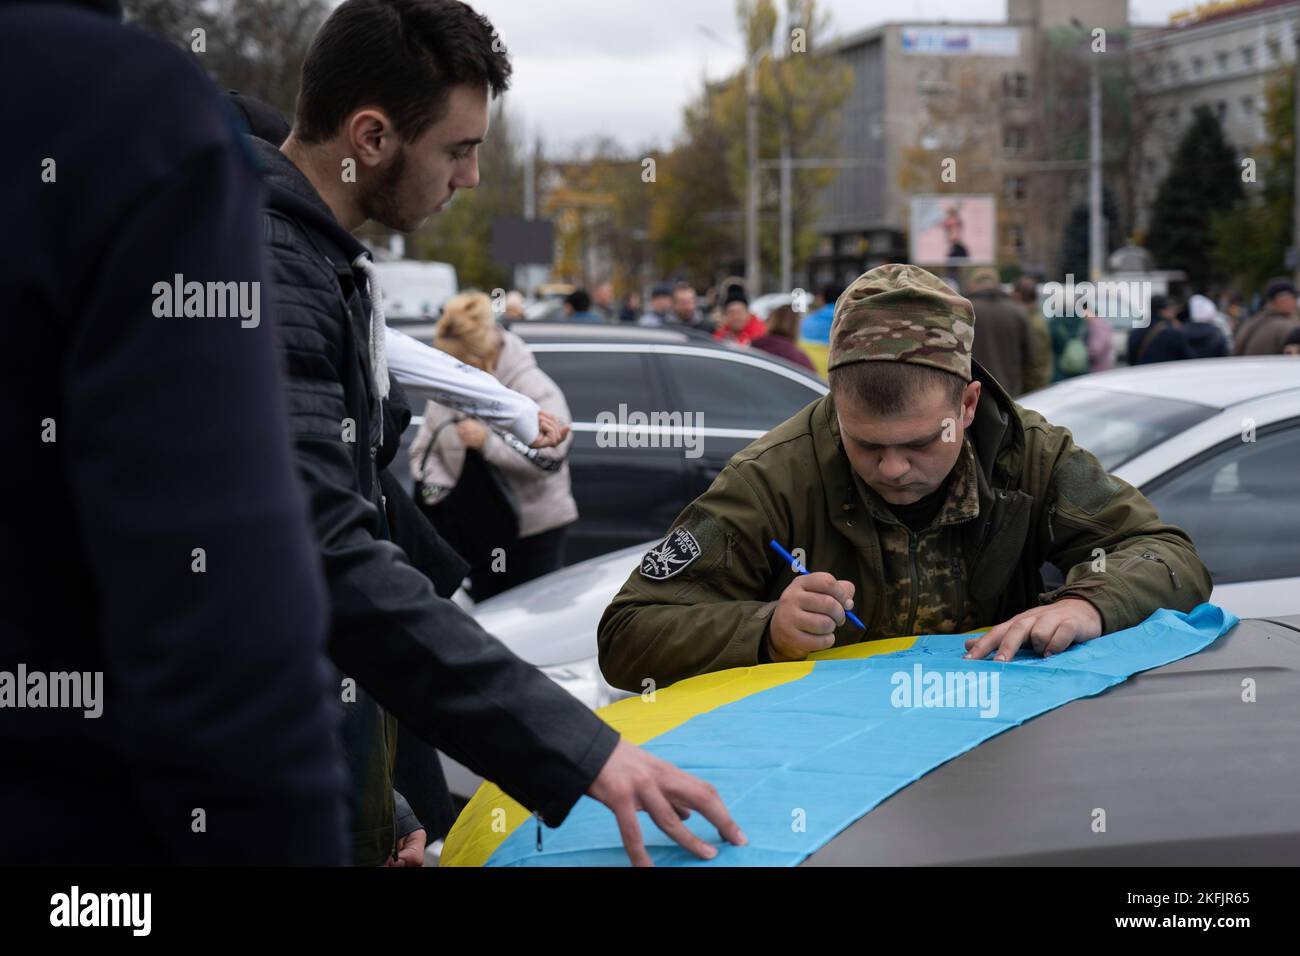 Kherson, Ukraine. 16th novembre 2022. Un soldat est vu signer le drapeau donné par un résident de Kherson. Les habitants de Kherson sont encore très heureux de la libération de la ville, mettant fin à plus de 8 mois d'occupation. Cependant, la capitale régionale du sud n'a toujours pas d'électricité, d'eau et un minimum de signal et d'approvisionnement alimentaire. Crédit : SOPA Images Limited/Alamy Live News Banque D'Images